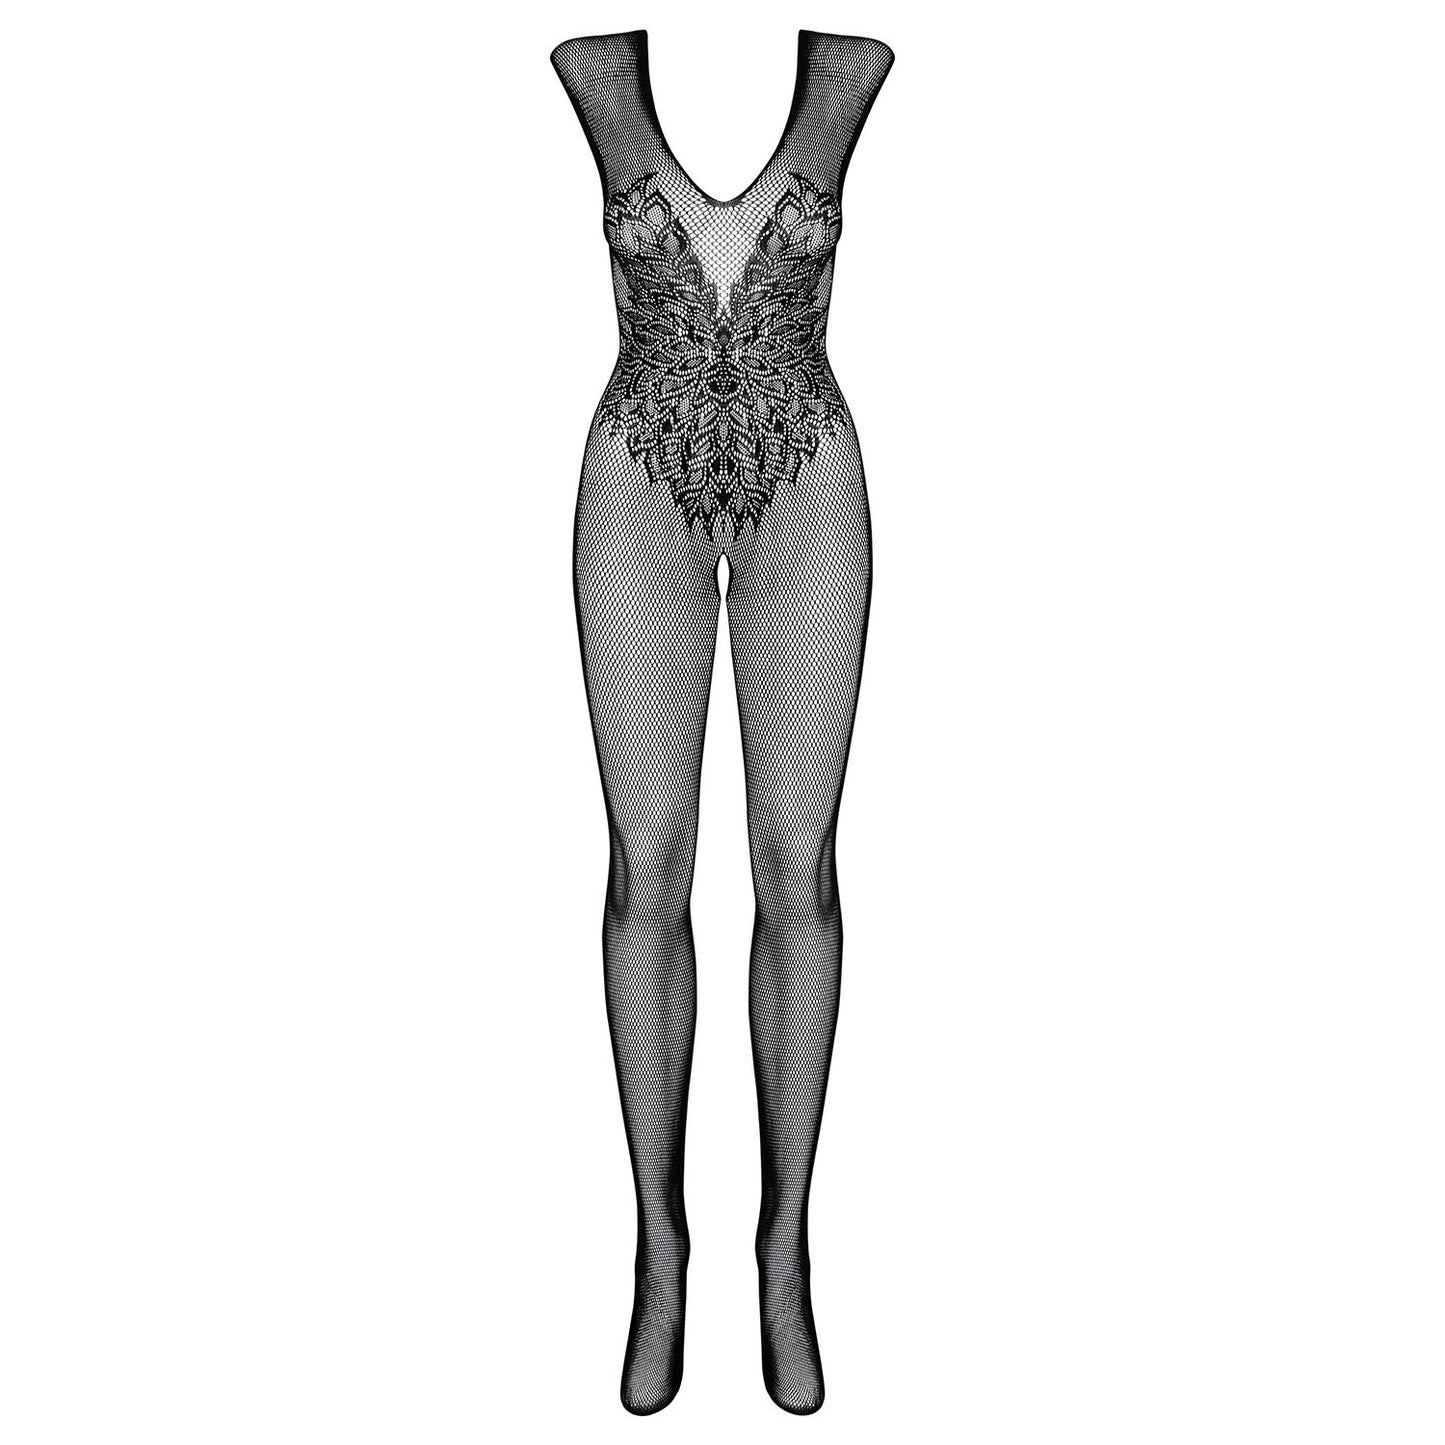 Obsessive, Sort net bodysuit - Find dine kvindelige feminine sider frem i denne bodysuit, den vil smyge sig smukt om dine former.